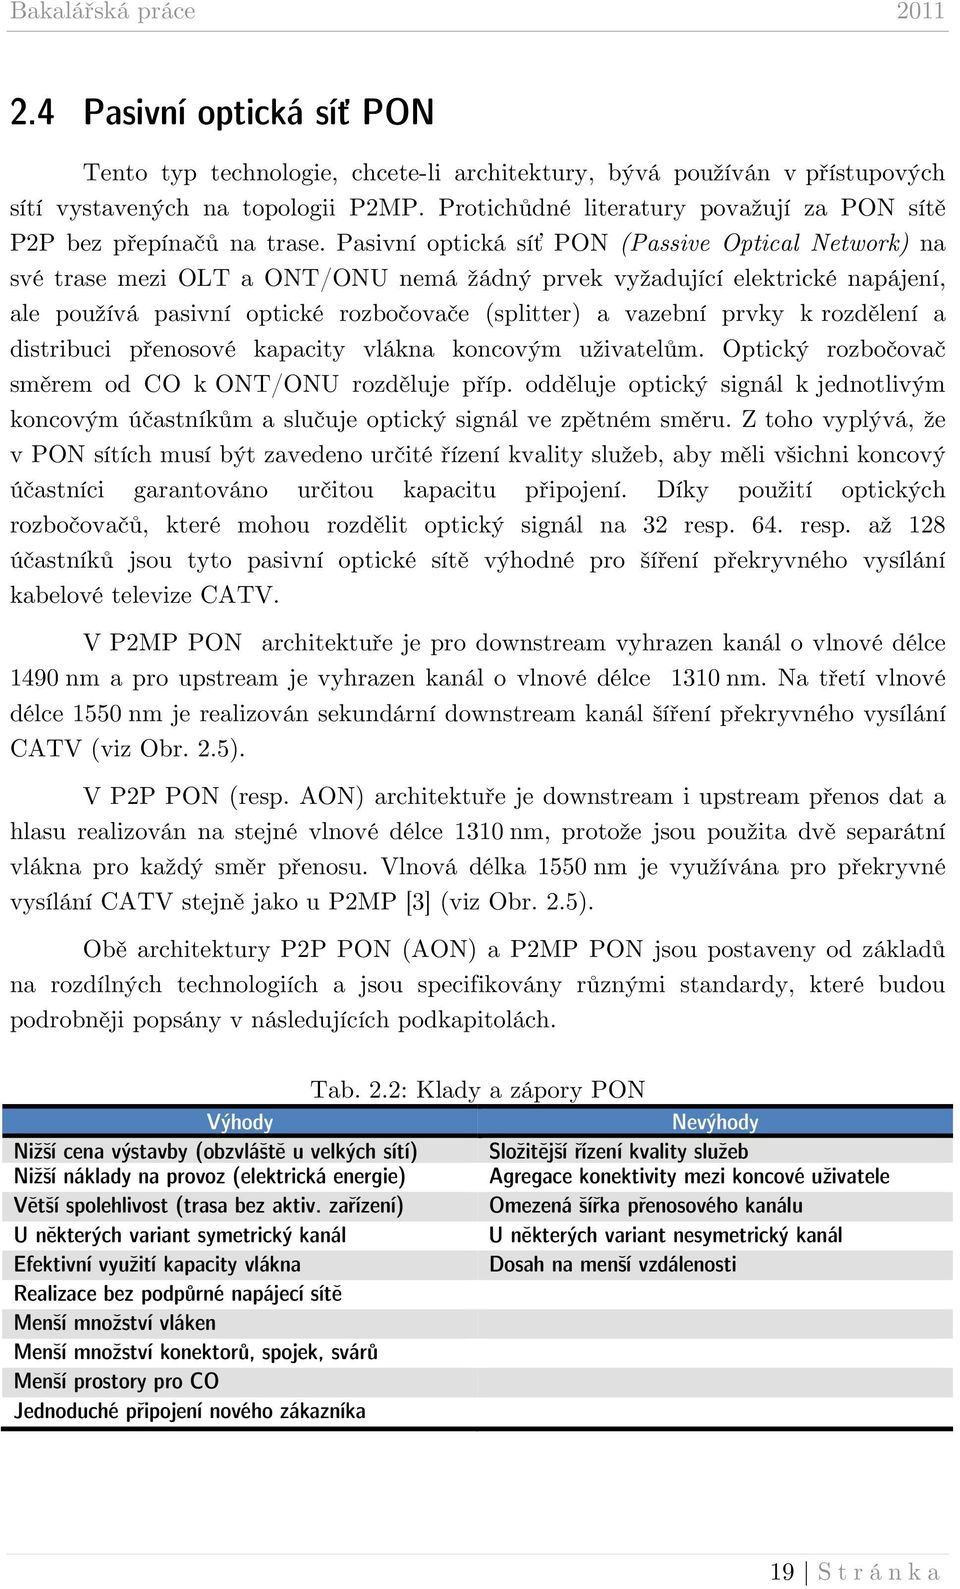 Pasivní optická síť PON (Passive Optical Network) na své trase mezi OLT a ONT/ONU nemá žádný prvek vyžadující elektrické napájení, ale používá pasivní optické rozbočovače (splitter) a vazební prvky k